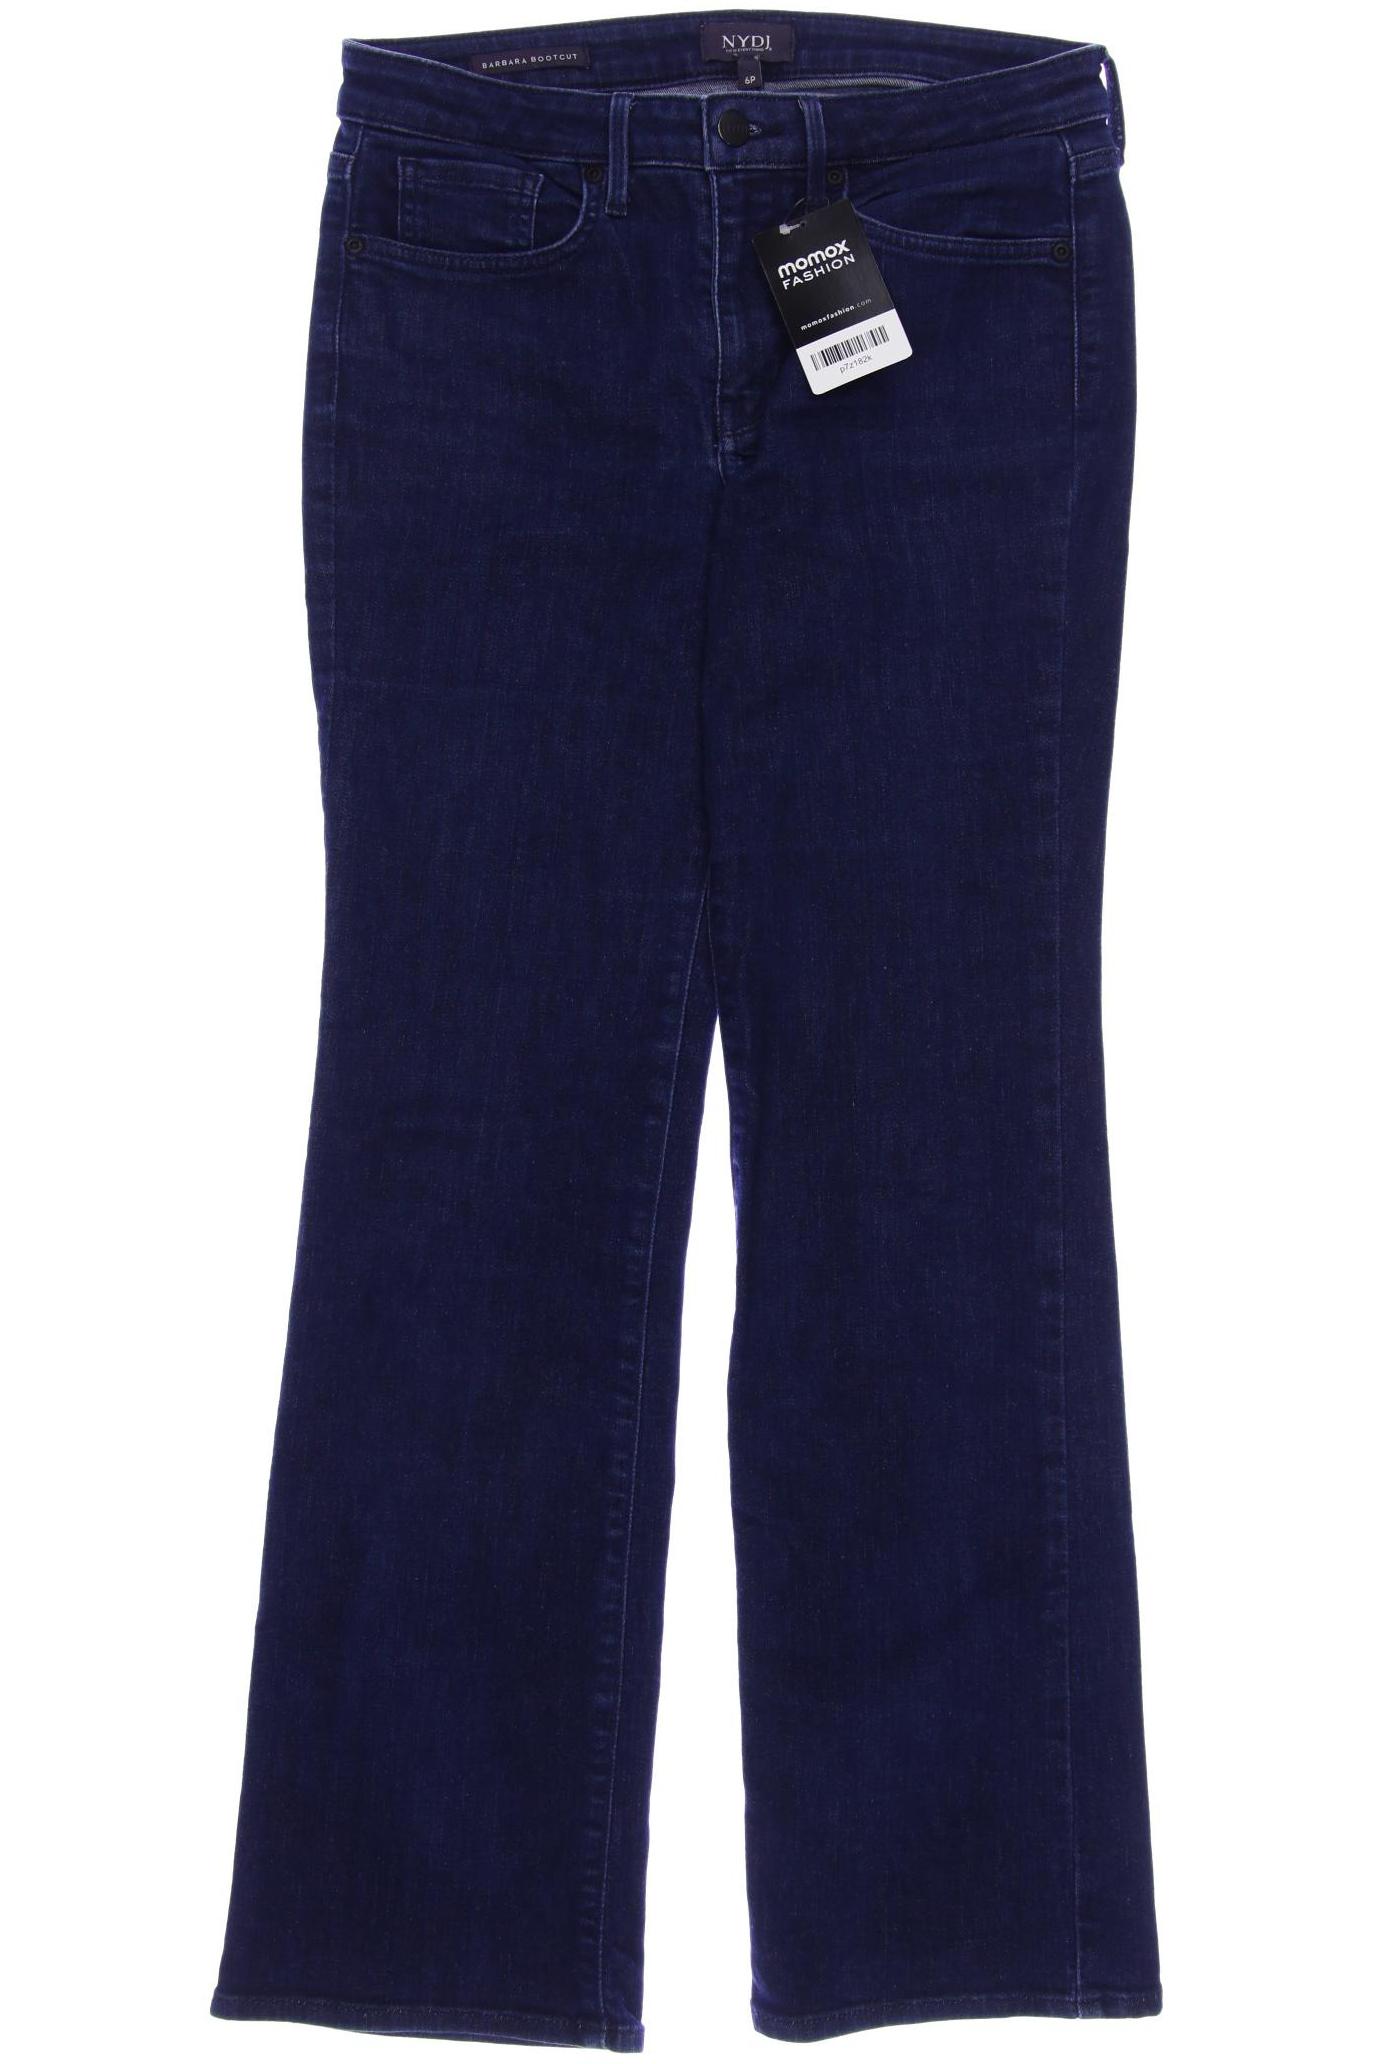 NYDJ Damen Jeans, marineblau von Nydj